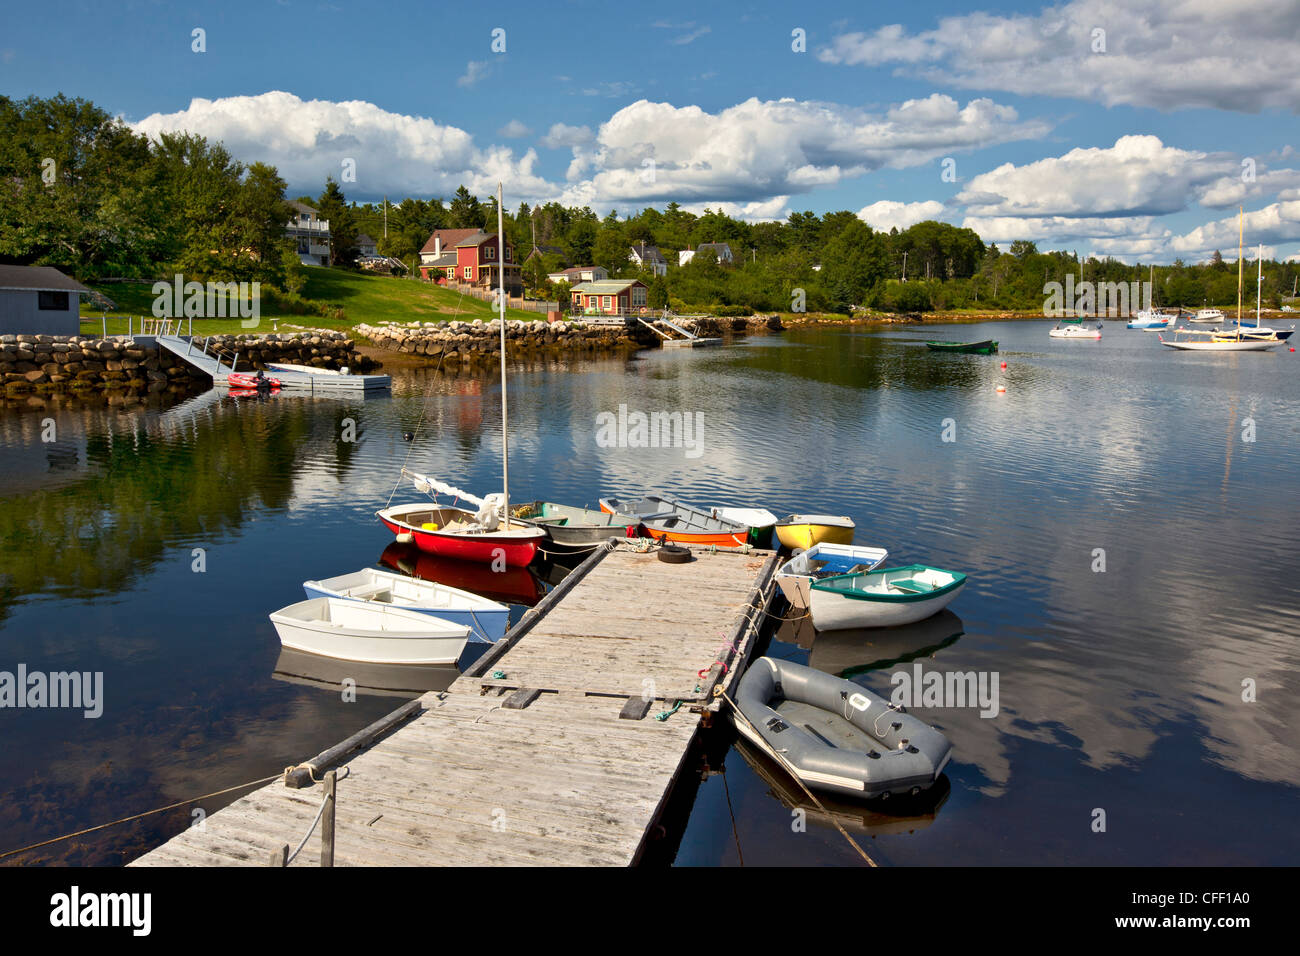 Small boats tied up at dock, Hubbards, Nova Scotia, Canada Stock Photo